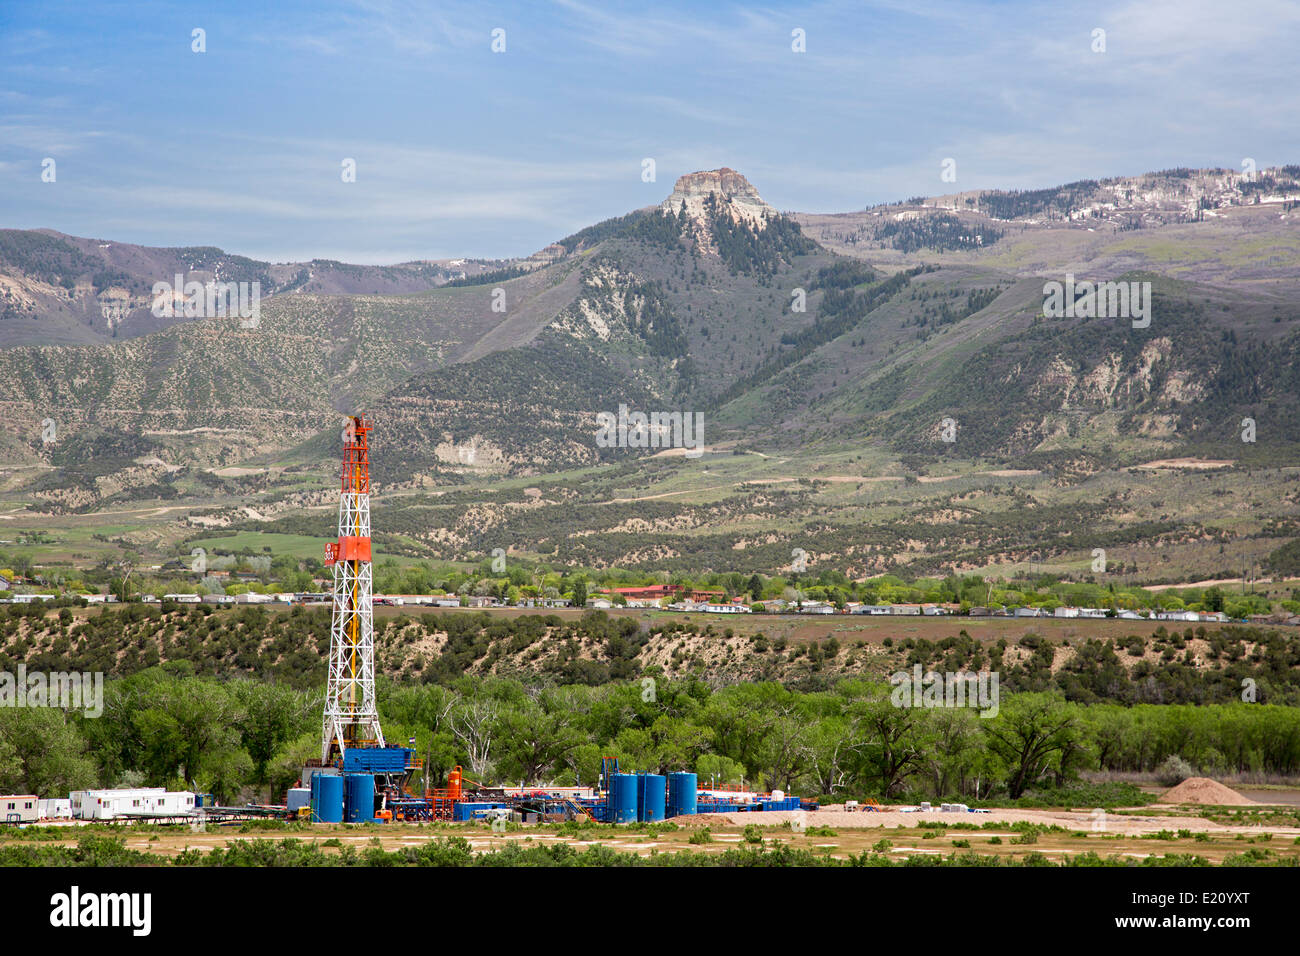 Grand Junction, Colorado - Oil drilling rig in western Colorado. Stock Photo